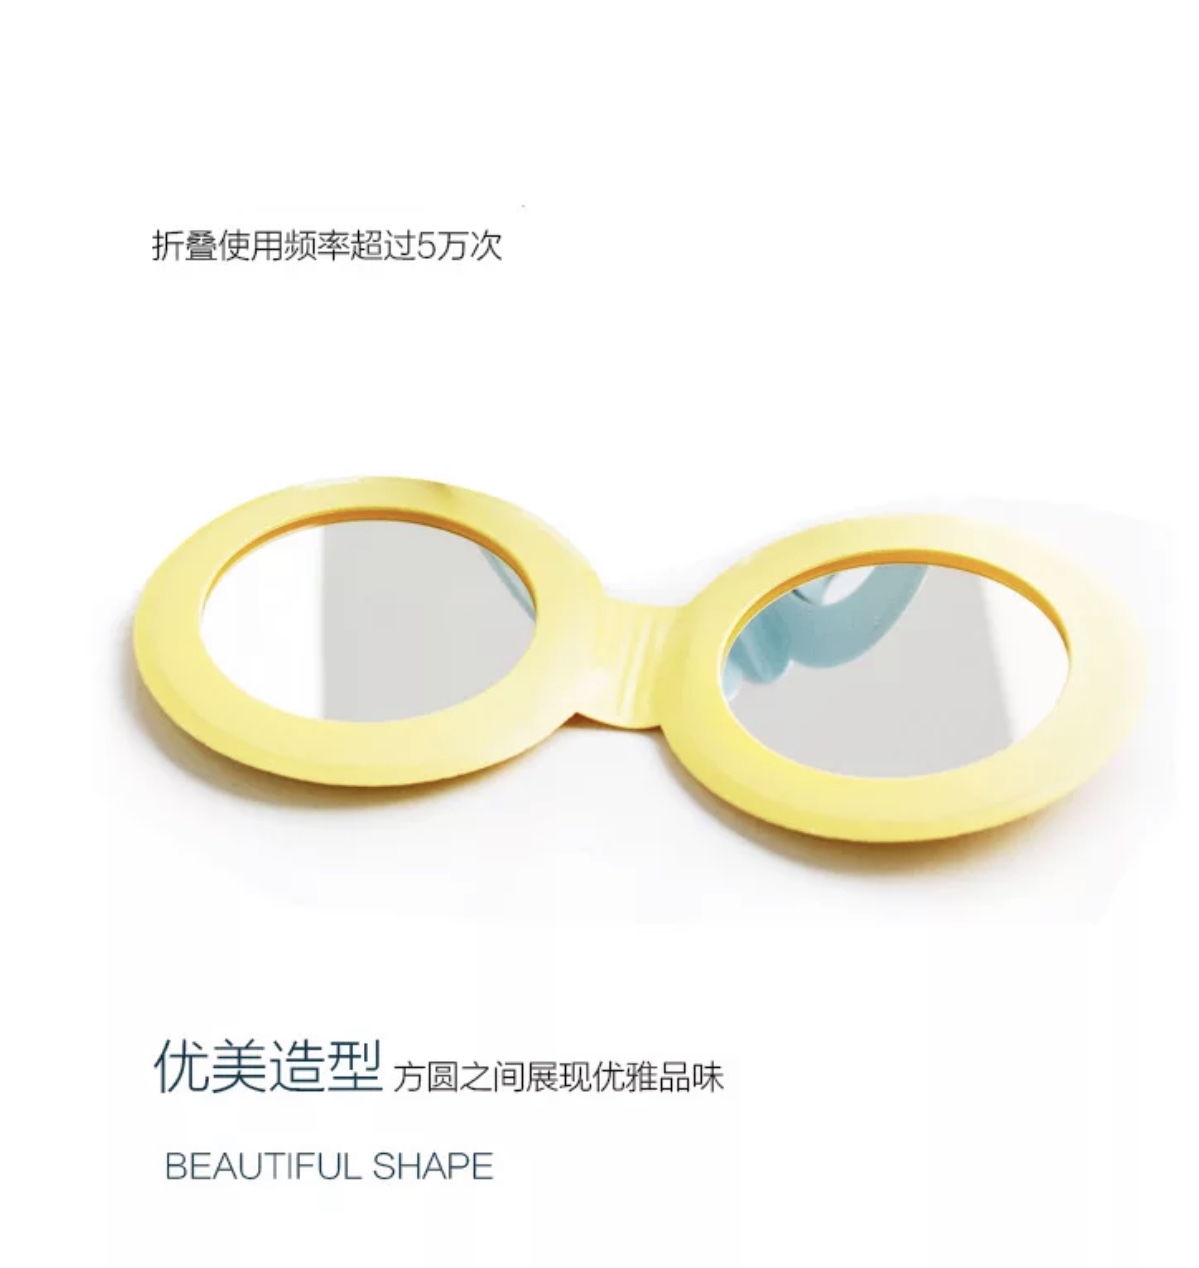 PVC糖果色七彩厂家直销折叠镜子 镜子小礼品 皮质化妆镜 PVC挂饰